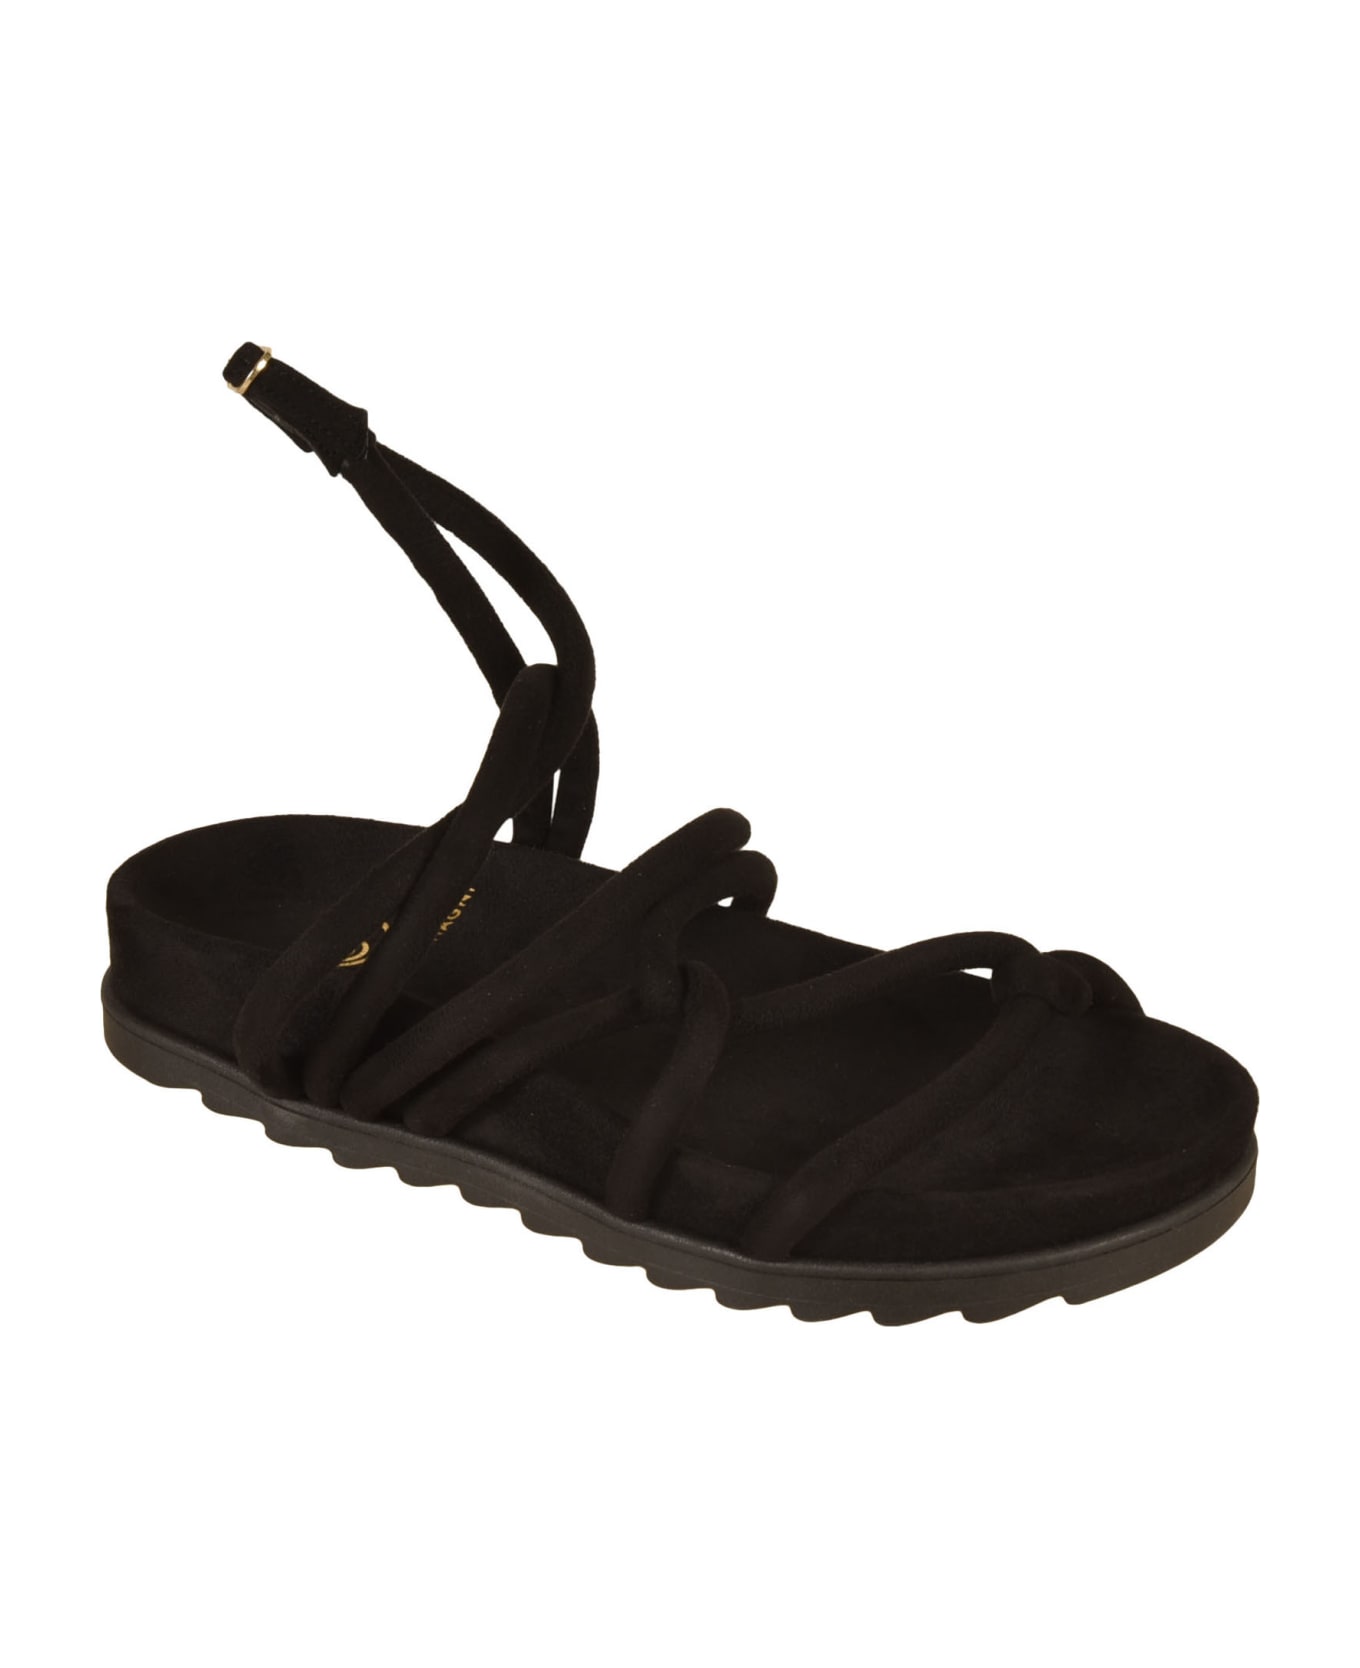 Chiara Ferragni Cable Sandals - Black